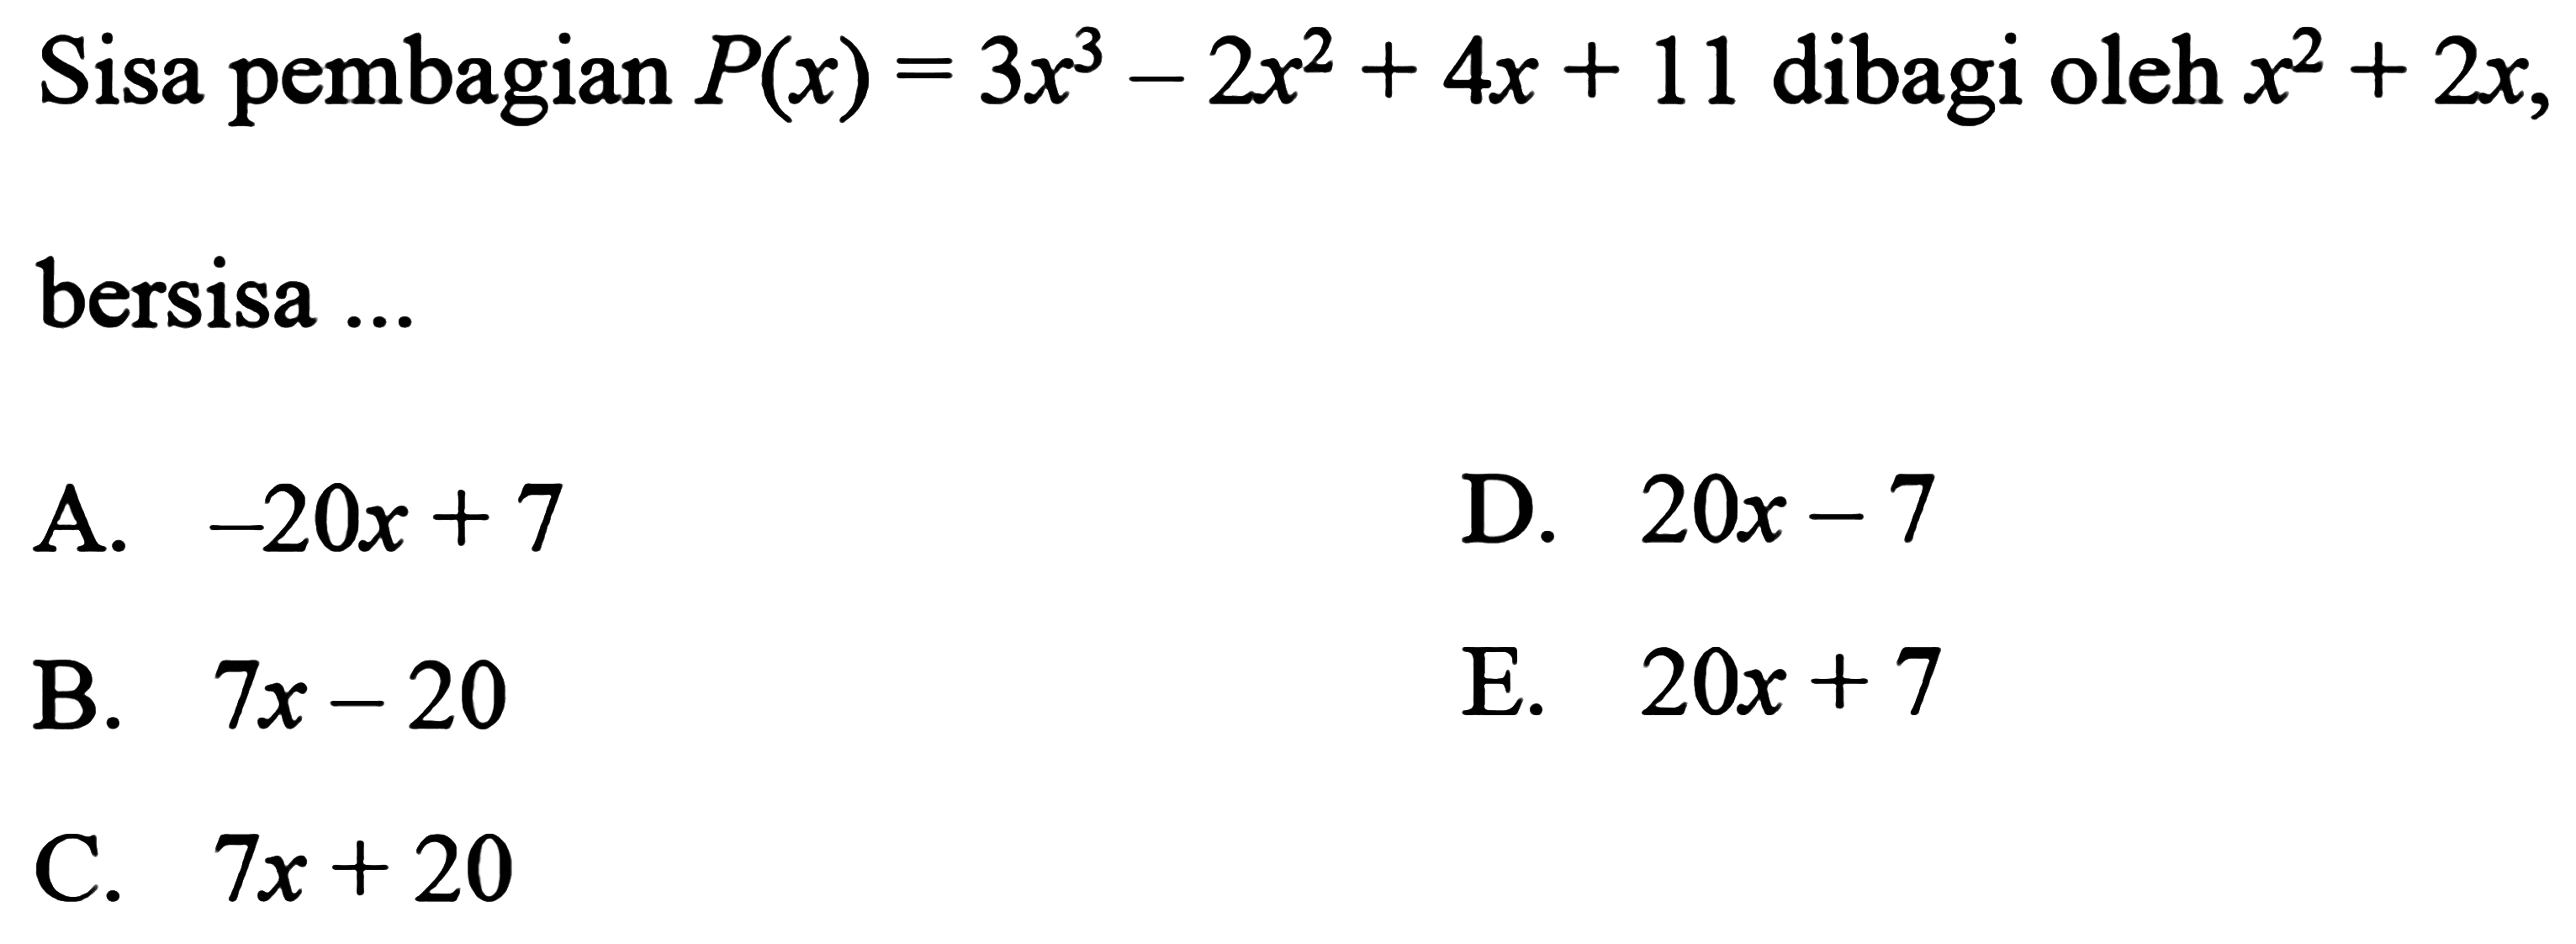 Sisa pembagian P(x)=3x^3-2x^2+4x+11 dibagi x^2+2x bersisa ....